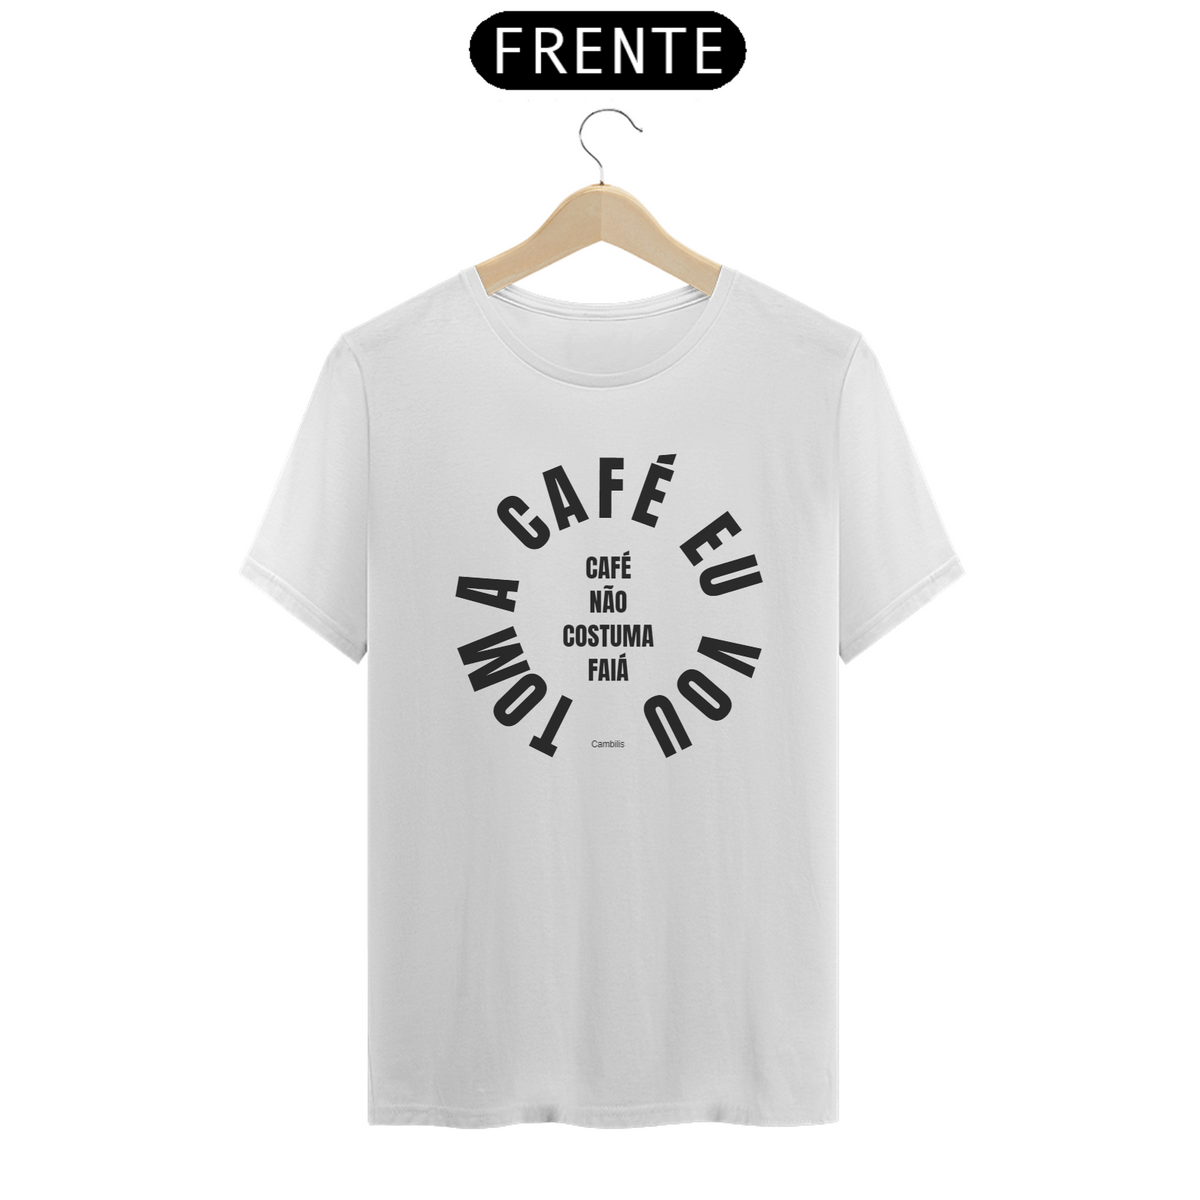 Nome do produto: Camiseta Toma café